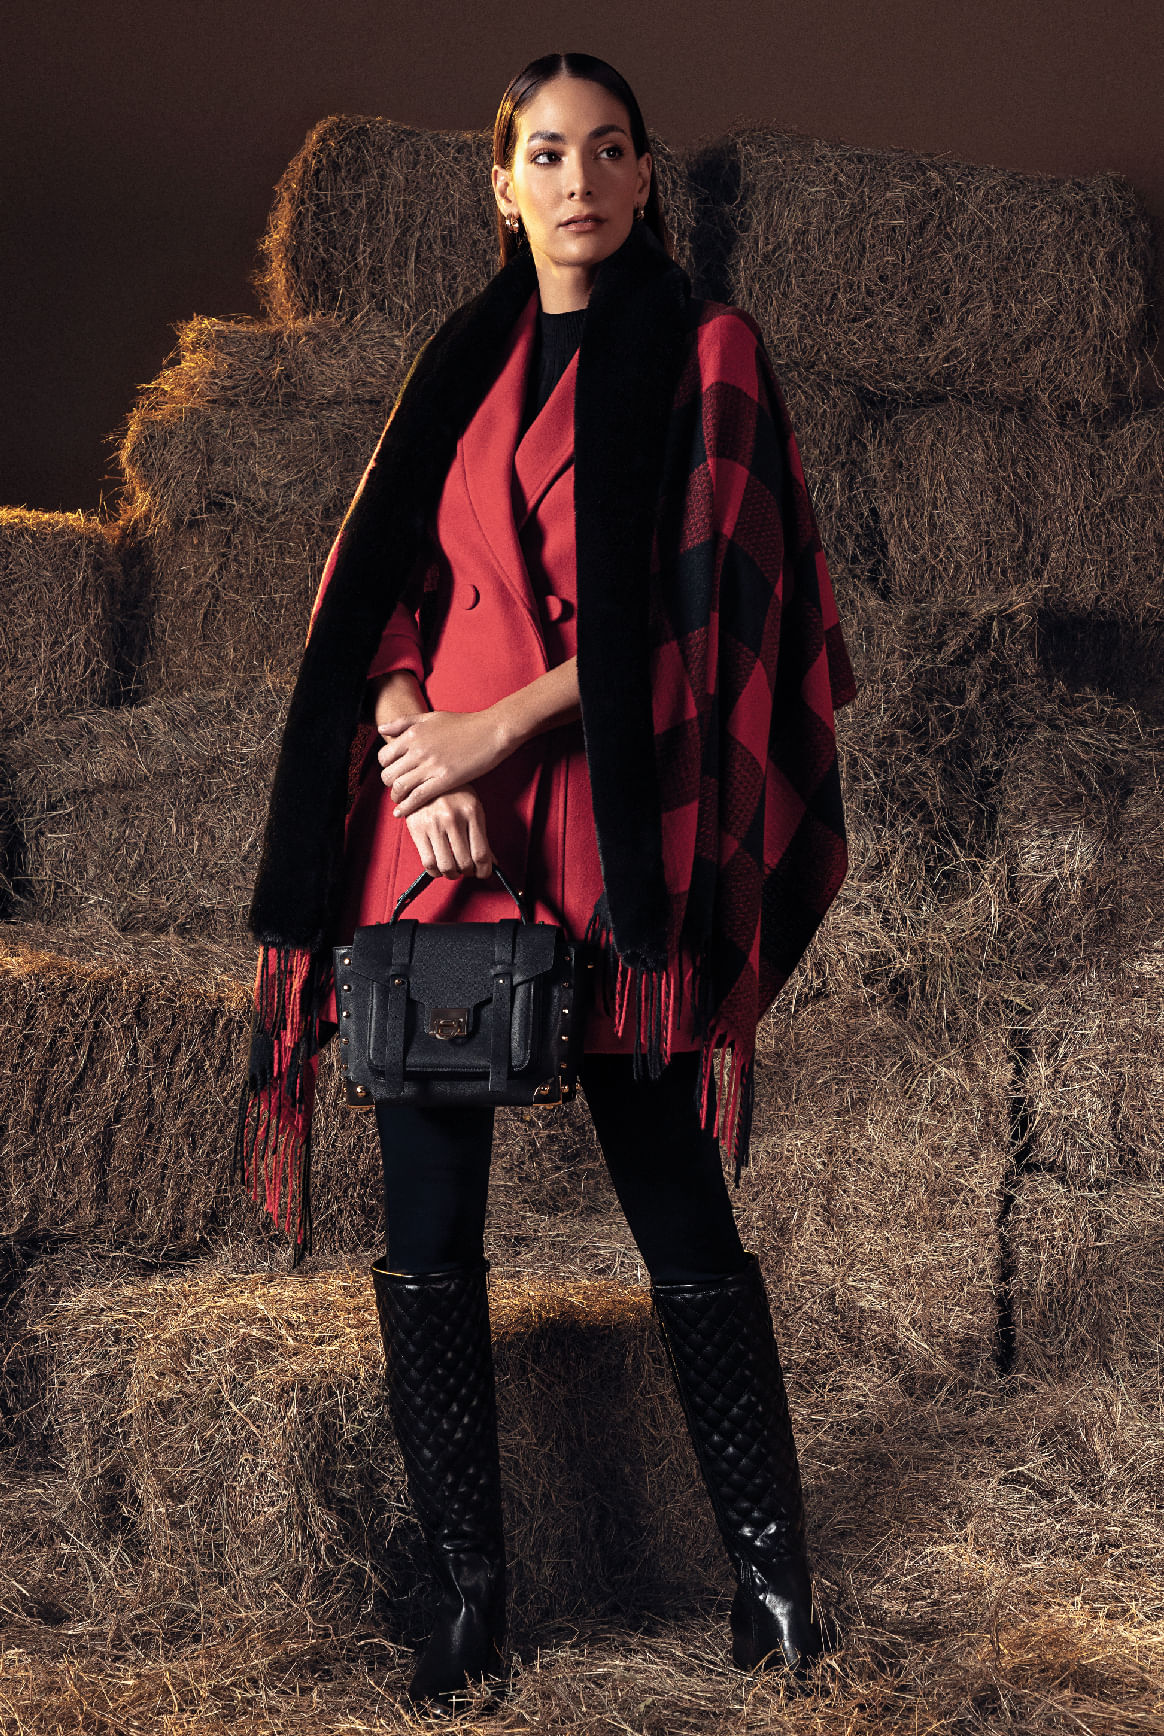 Fotografía de mujer en plano entero con blazer rojo, kimono rojo con cuadros negros, pantalón y botas caña alta negras, Studio F